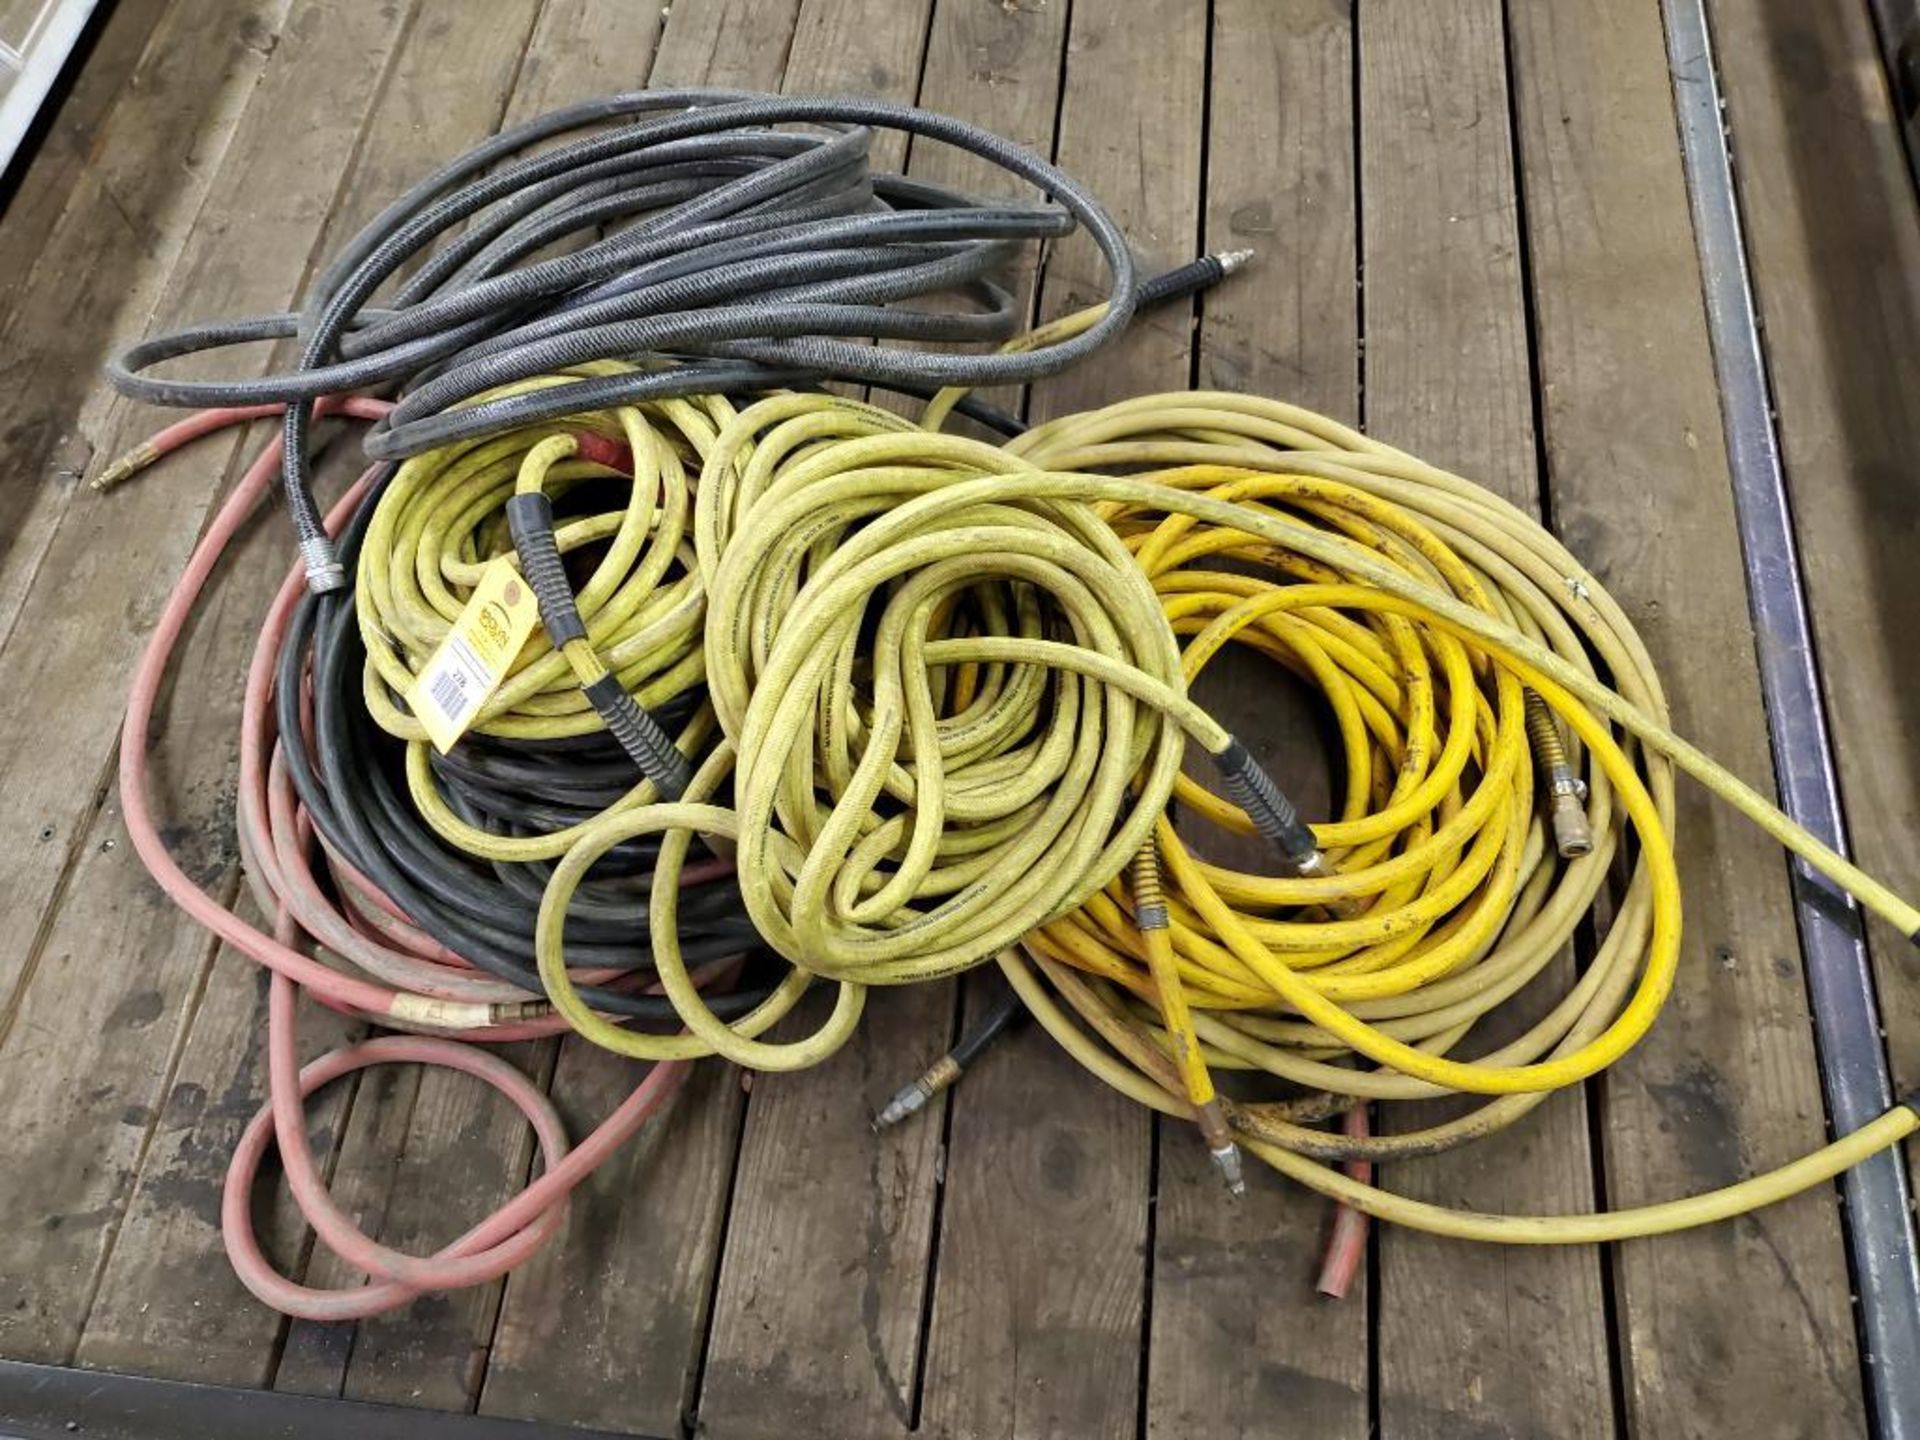 Assorted hoses.